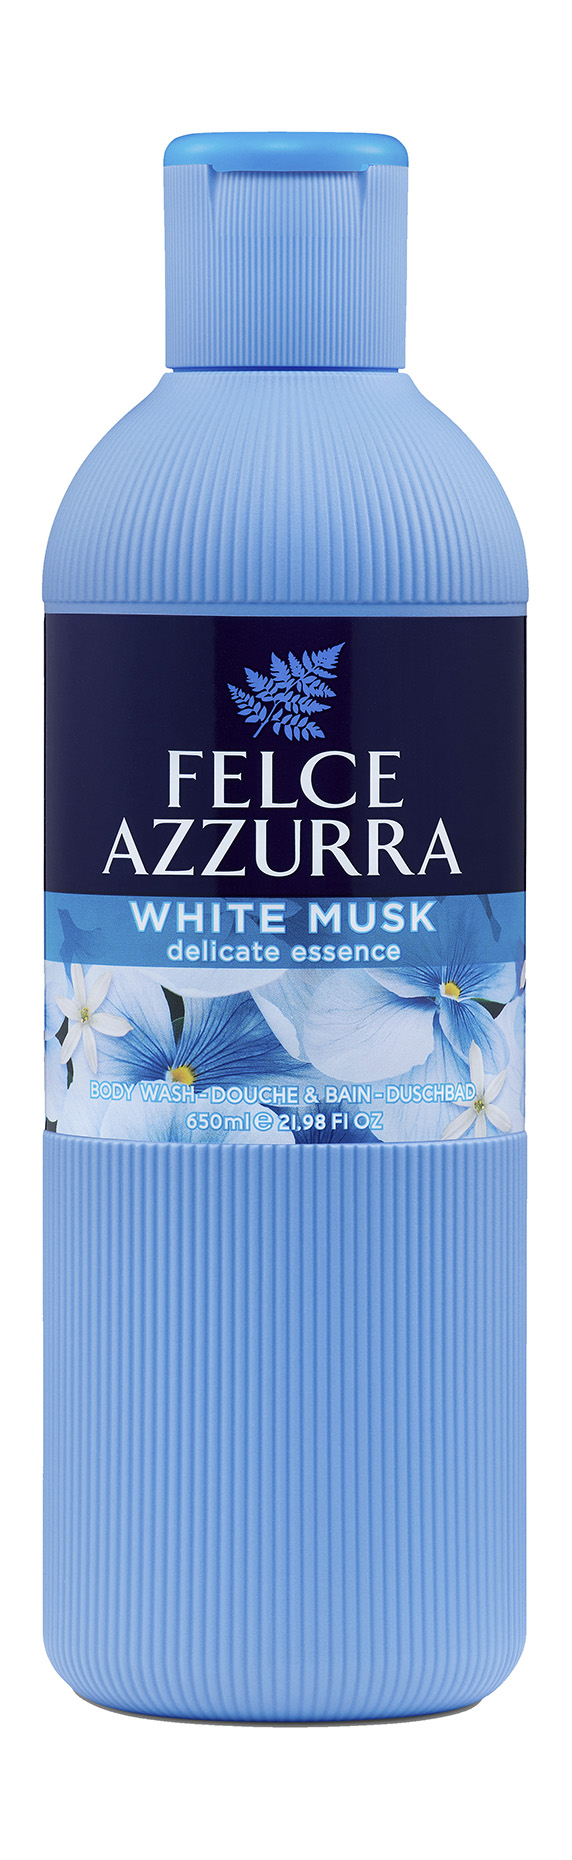 Гель для душа Felce Azzurra White Musk Delicate Essence парфюмированный, 650 мл успокаивающий крем для нормальной кожи so delicate tolerance care